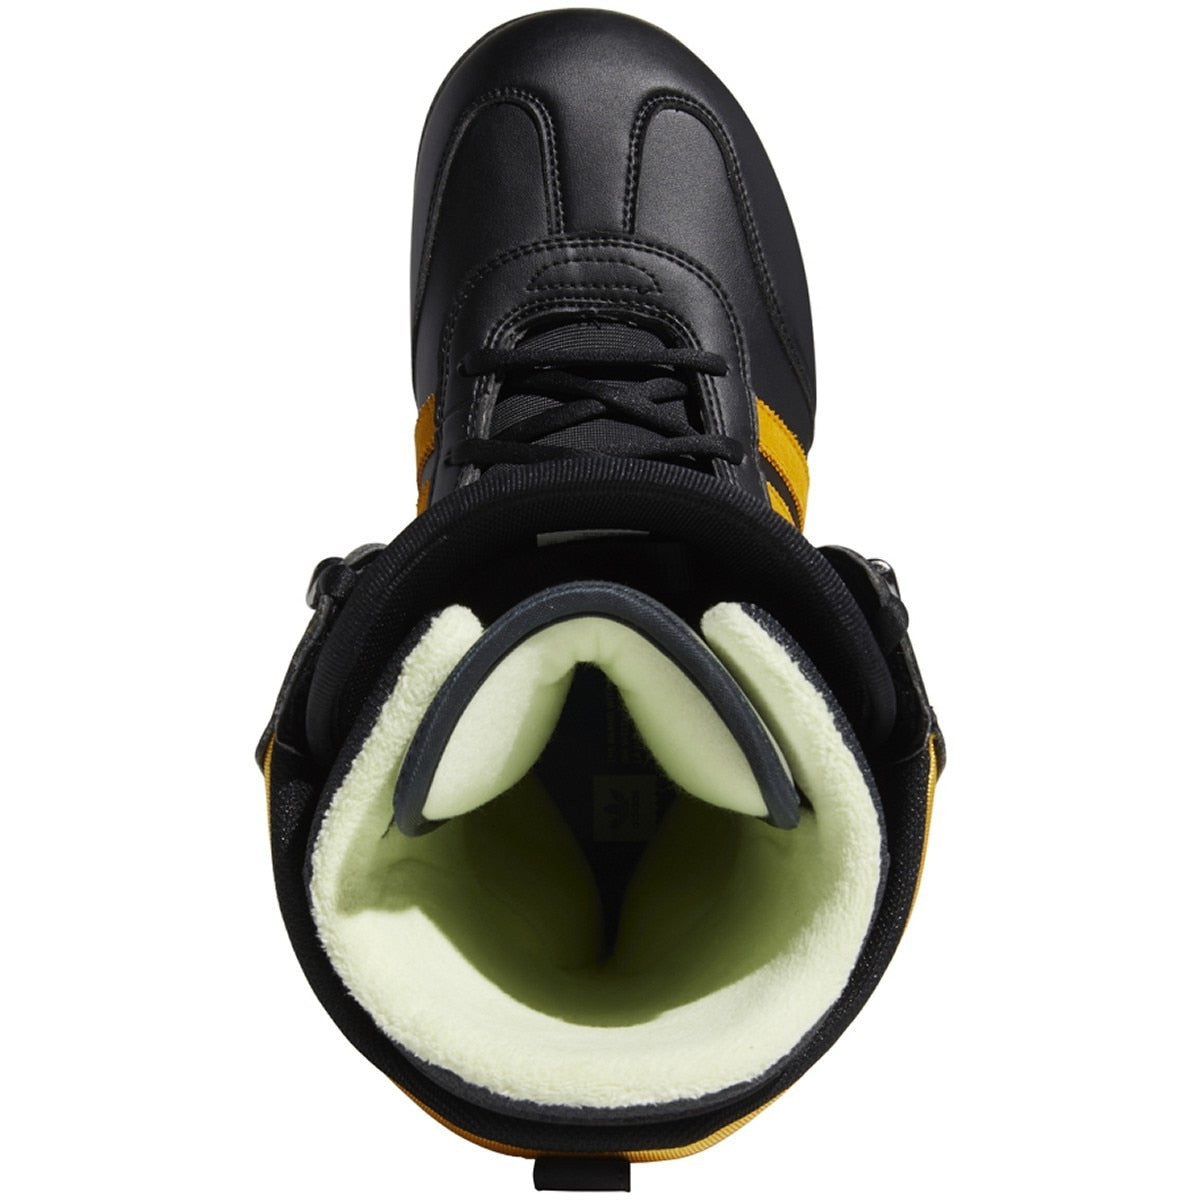 Adidas Samba ADV 2020 Snowboard Boots - Core Black/Collegiate Gold/Gum